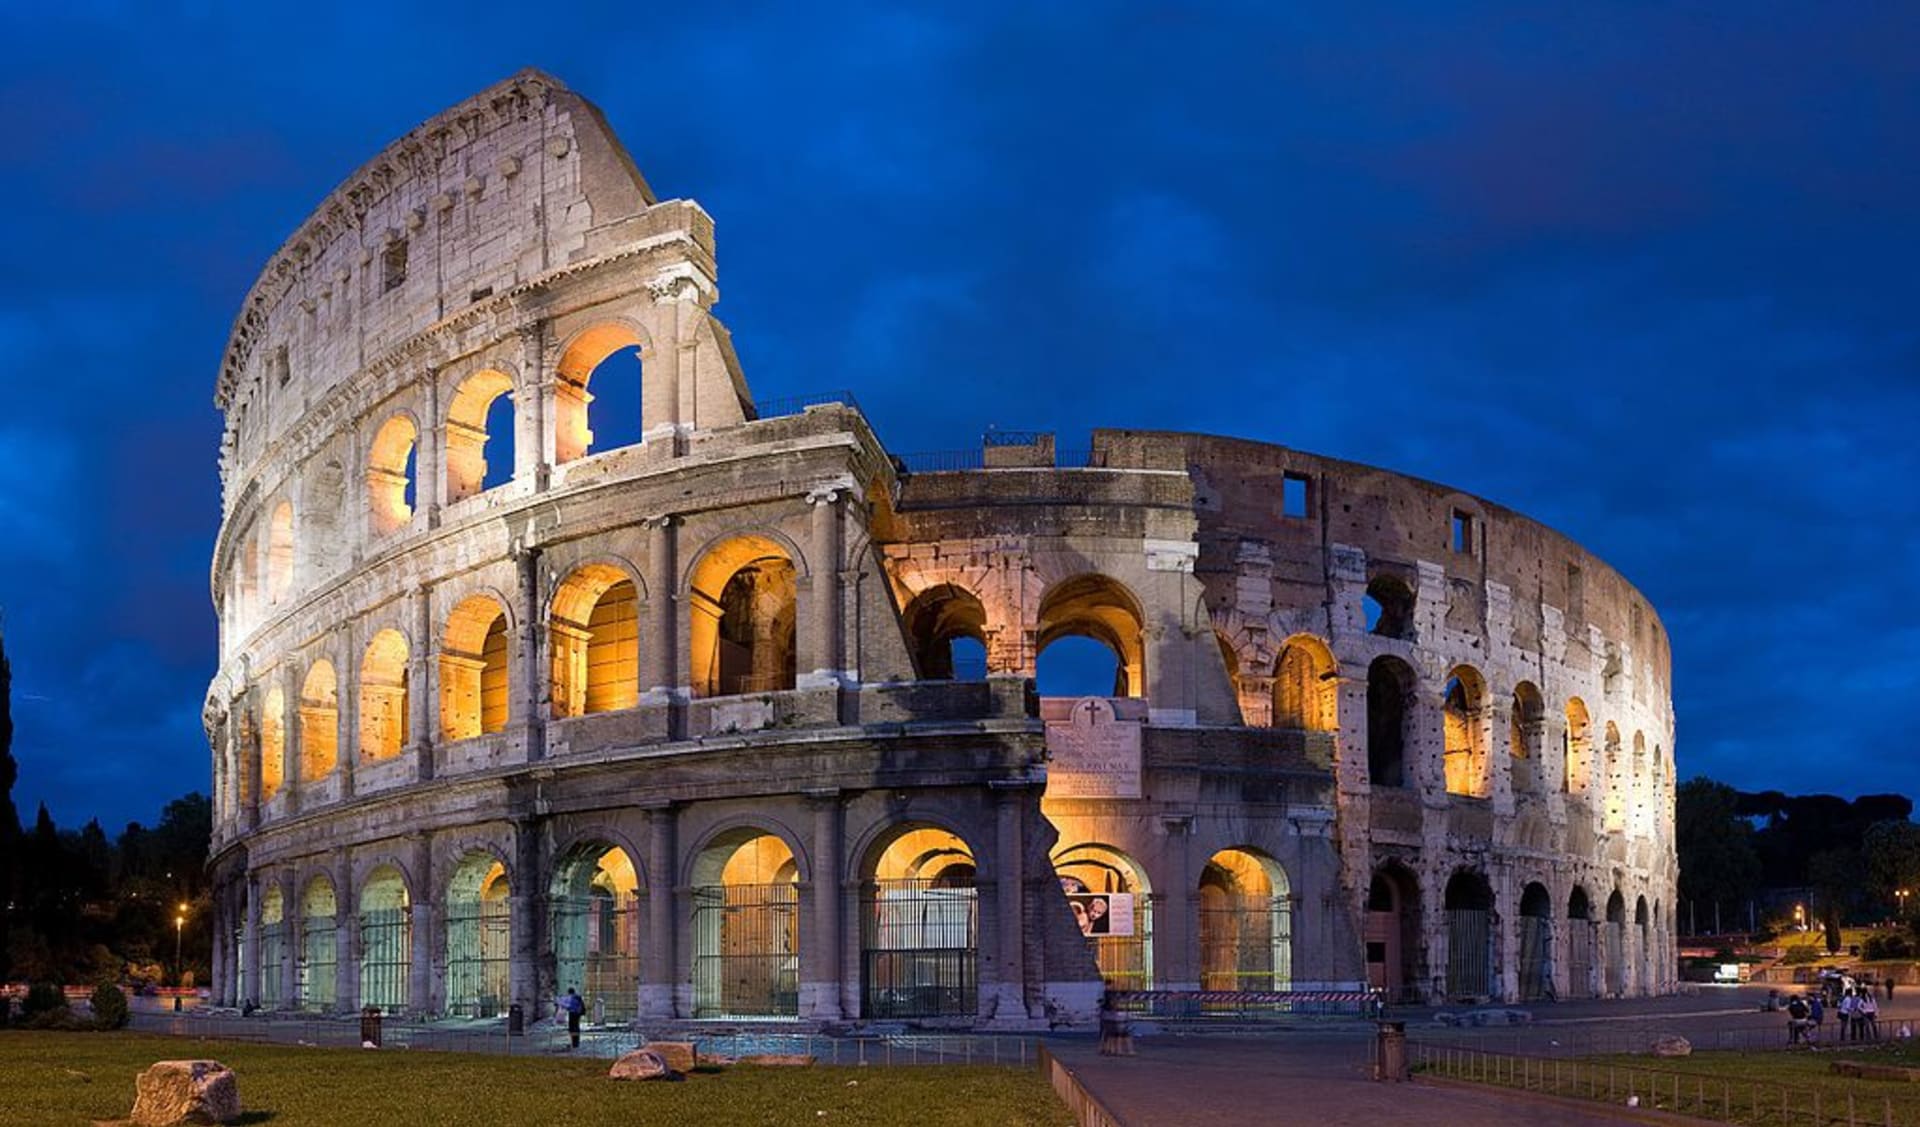 Koloseum v Říně - symbol římské moci